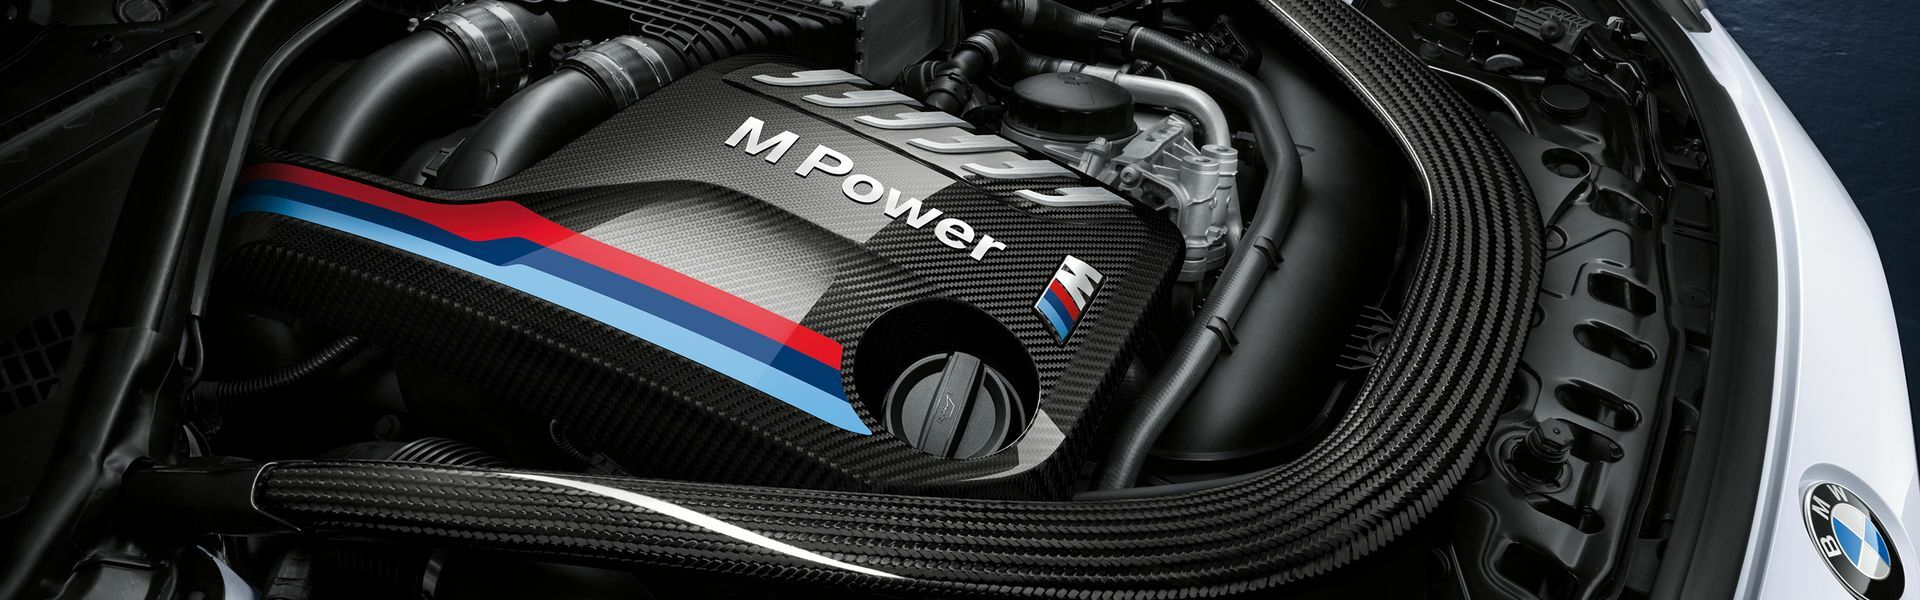 Zvýšení výkonu/ Softwarové úpravy/ Drobné performance díly pro automobil BMW Z4 M40i